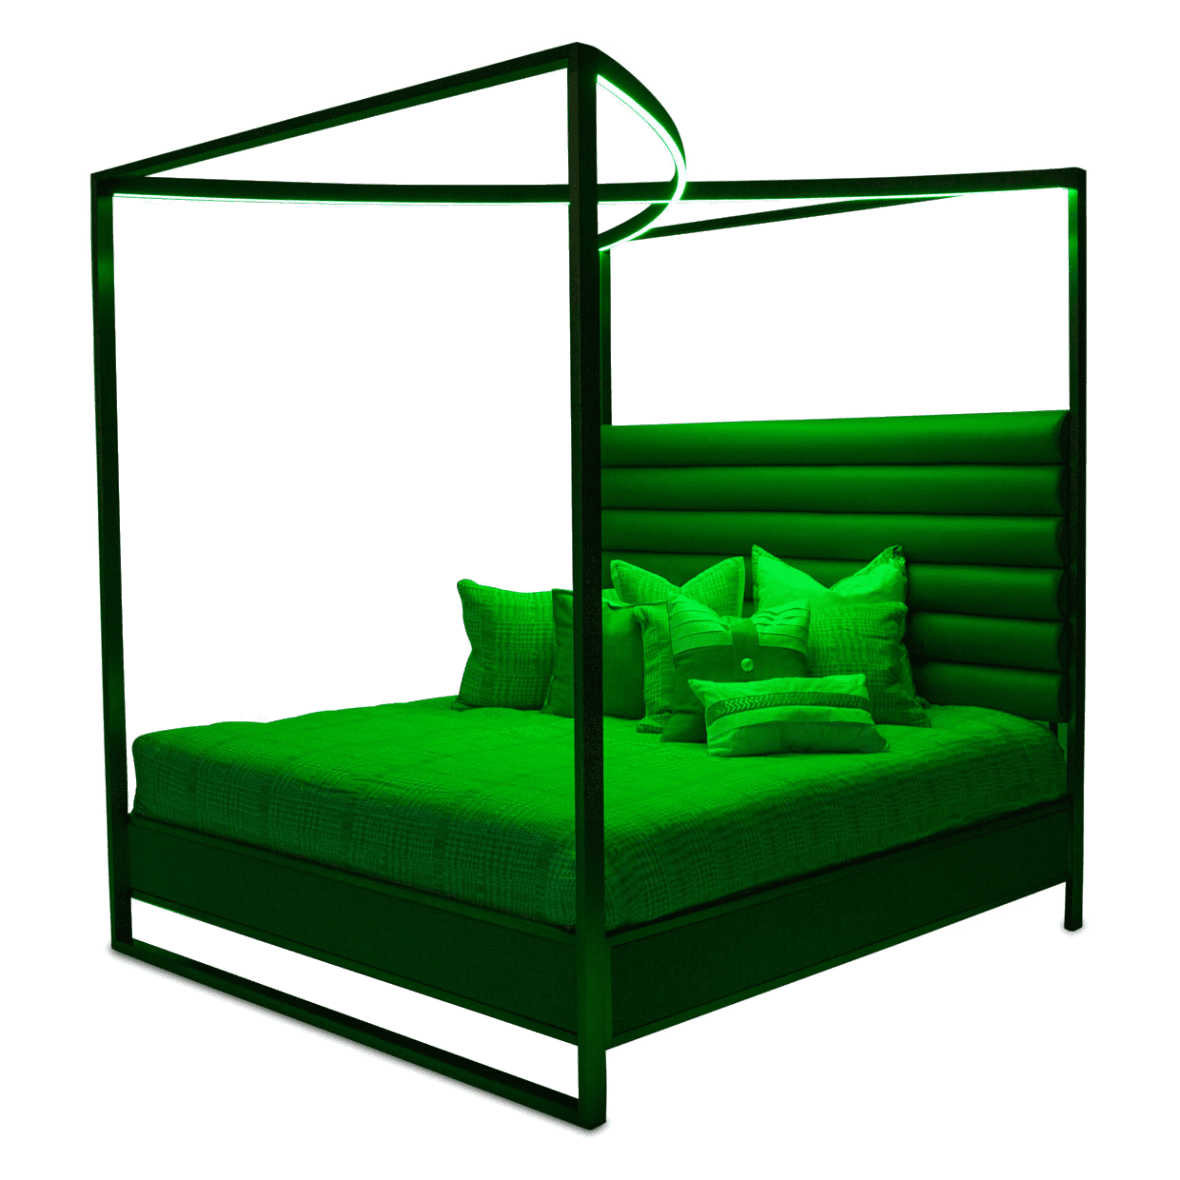 Кровать с декоративным балдахином с подсветкой, размер Eastern King